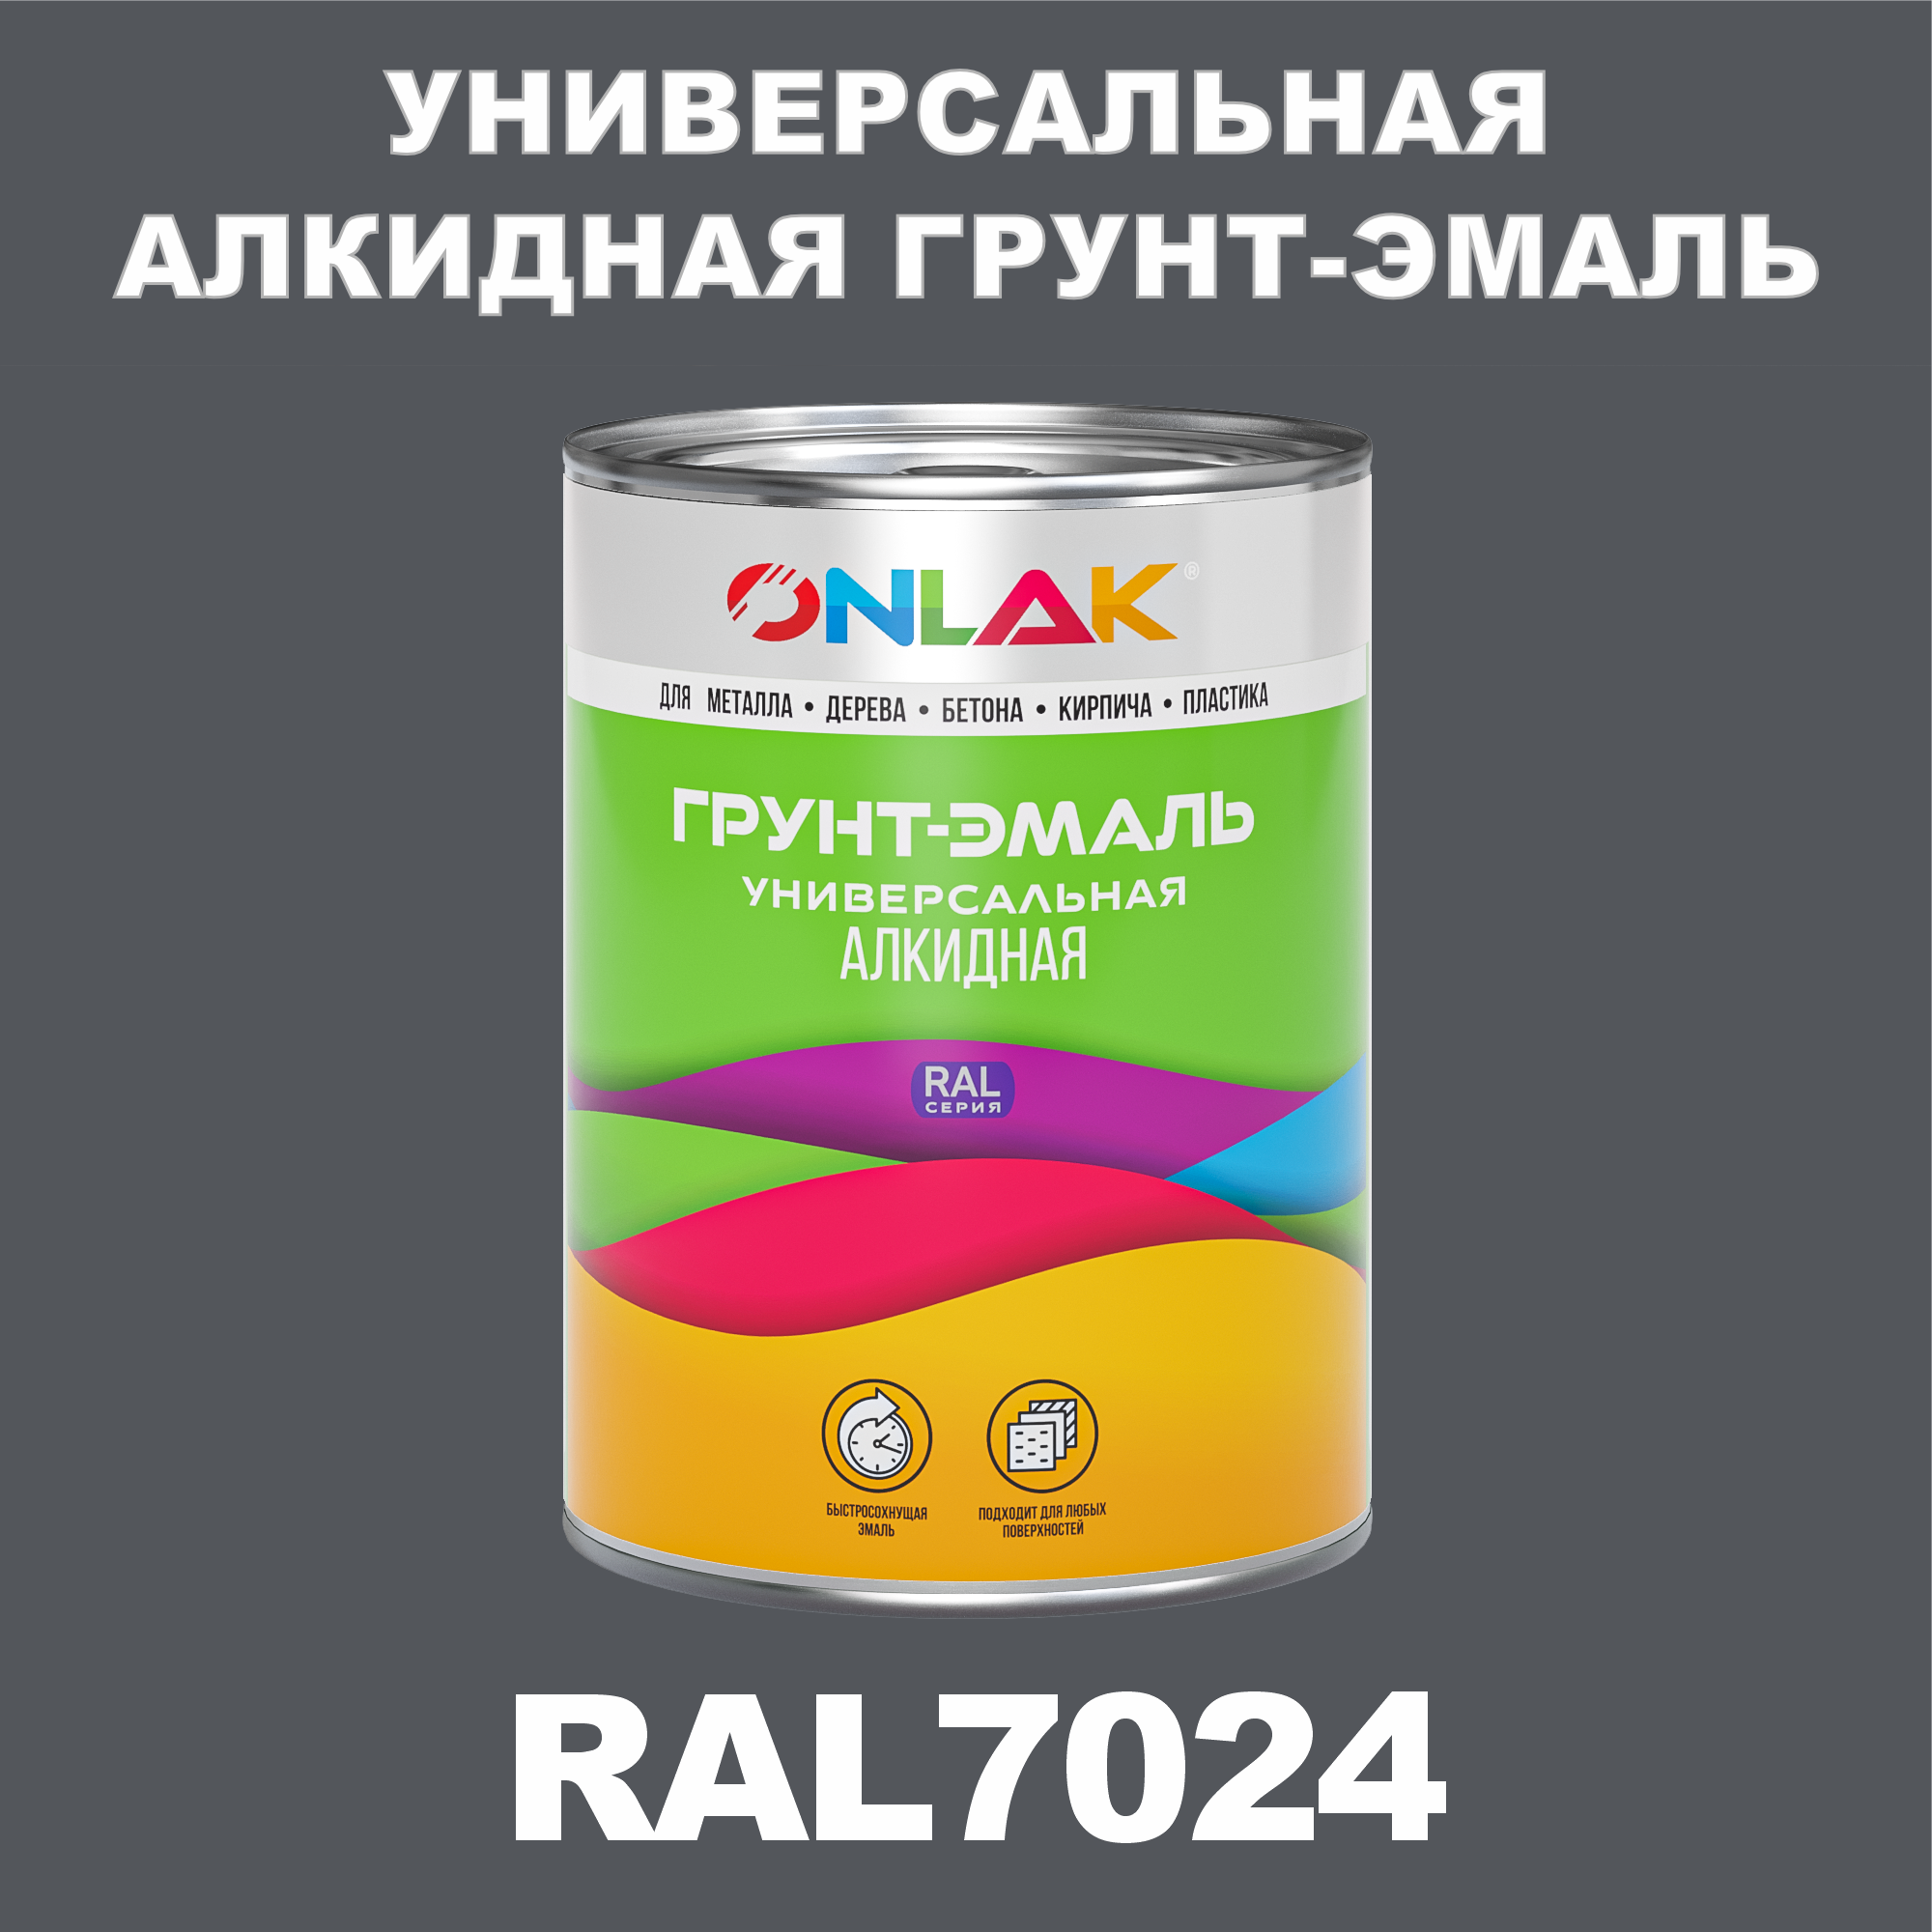 Грунт-эмаль ONLAK 1К RAL7024 антикоррозионная алкидная по металлу по ржавчине 1 кг